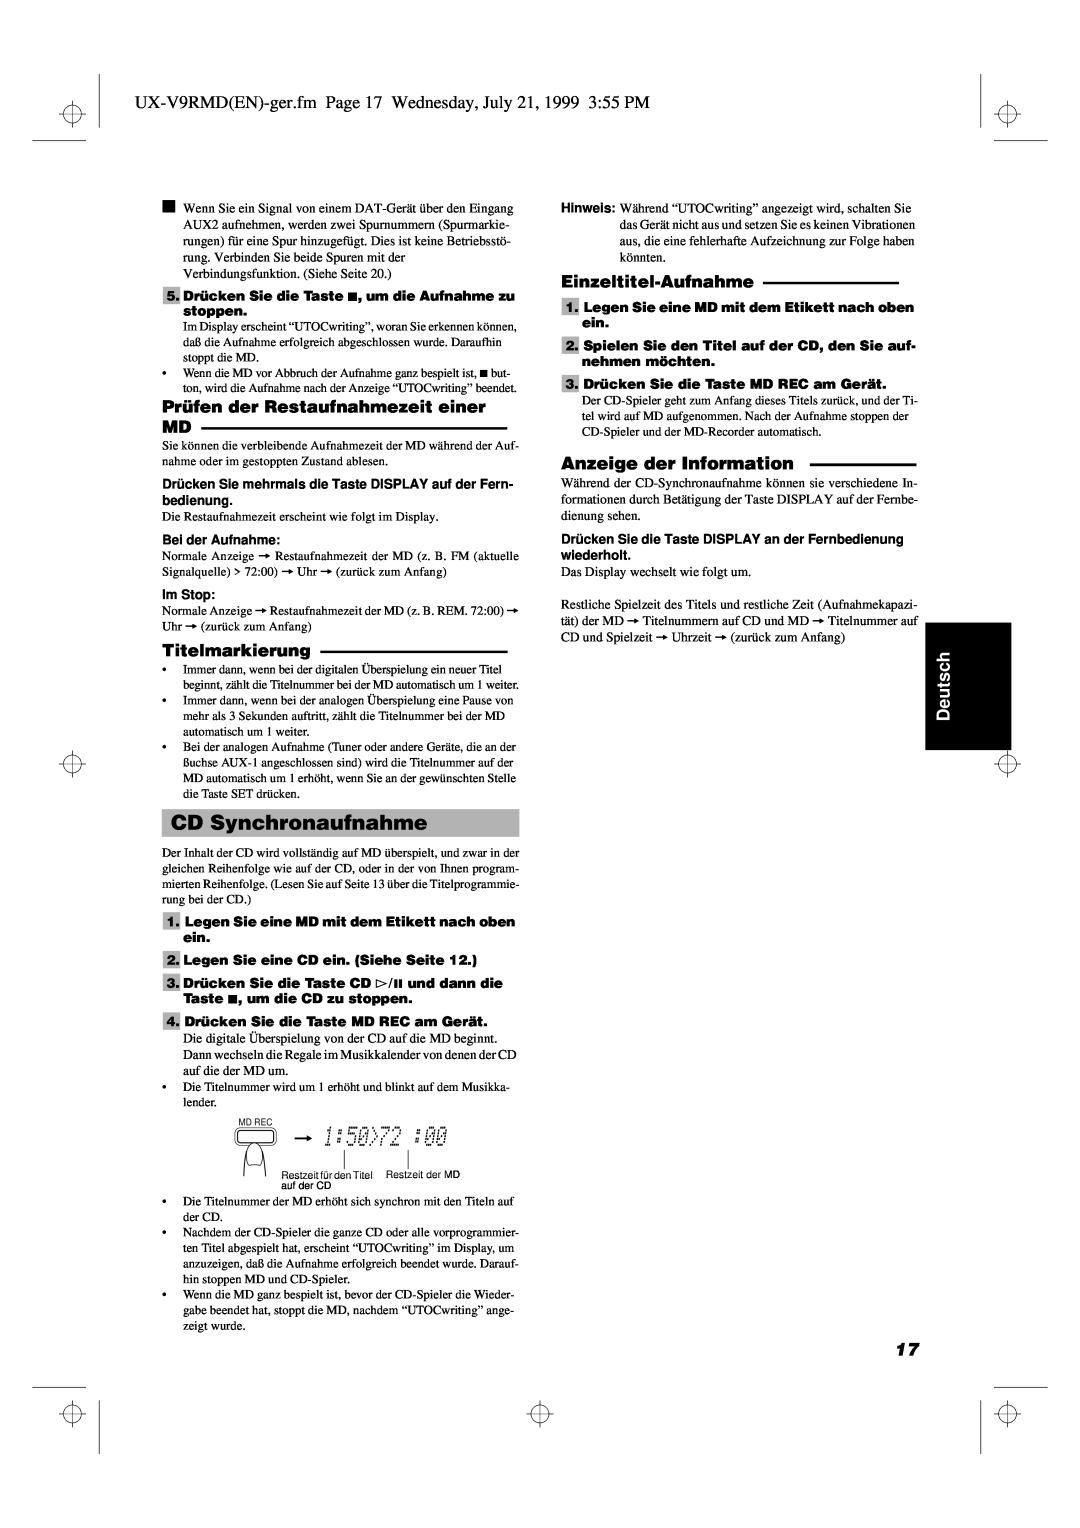 JVC UX-V9RMD manual CD Synchronaufnahme, Anzeige der Information, Titelmarkierung, Einzeltitel-Aufnahme, Deutsch 